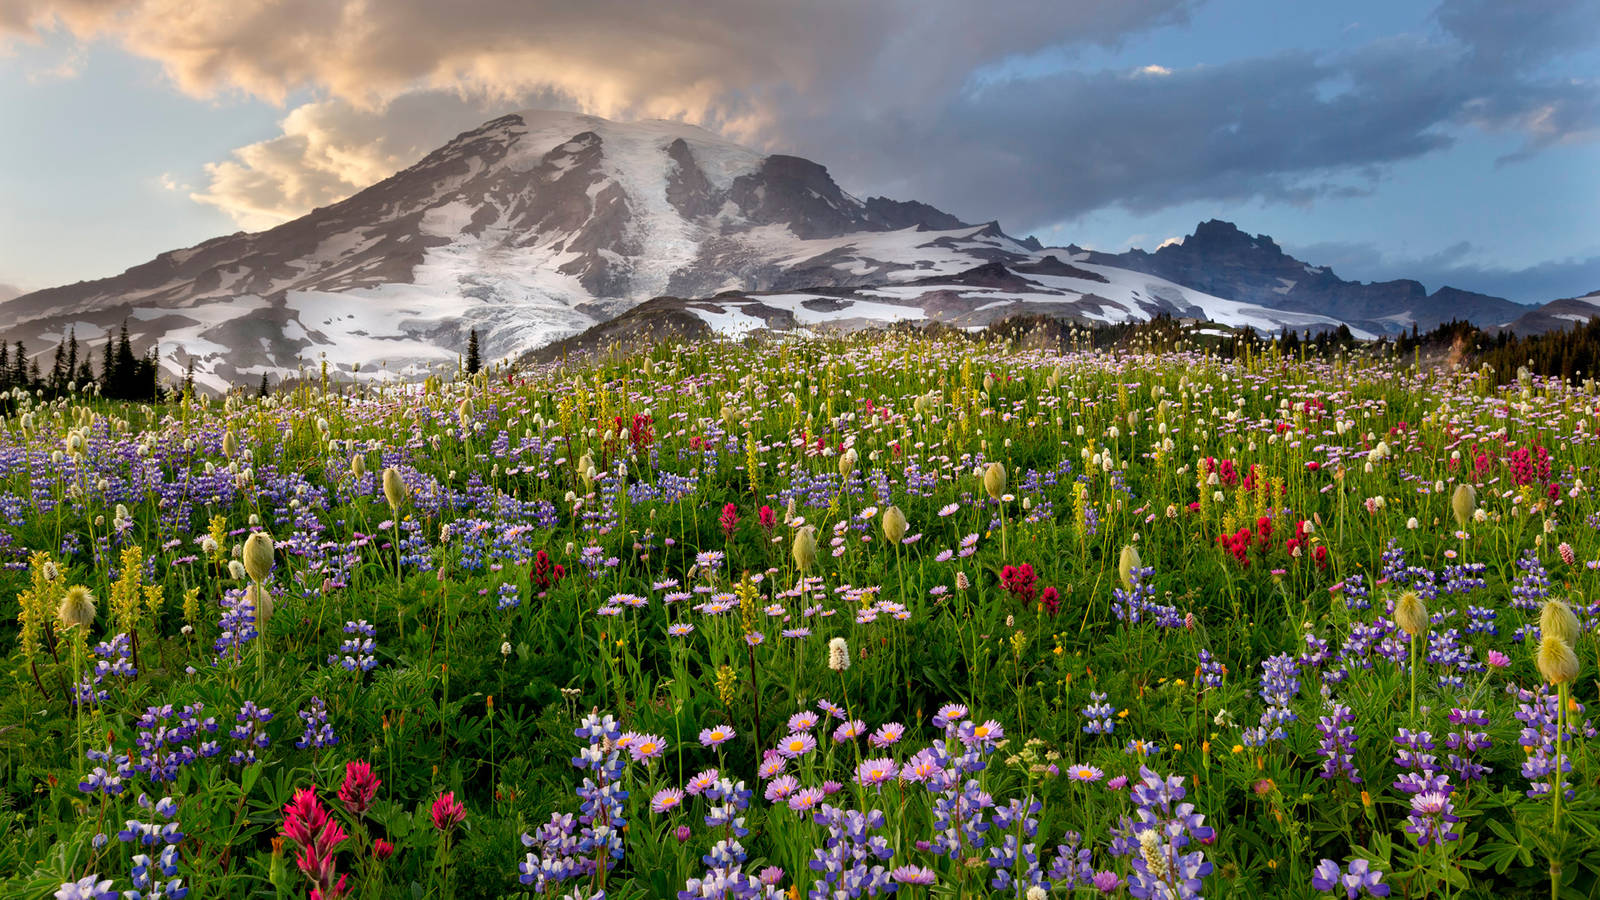 Mount Rainier . National Parks Conservation Association1600 x 900